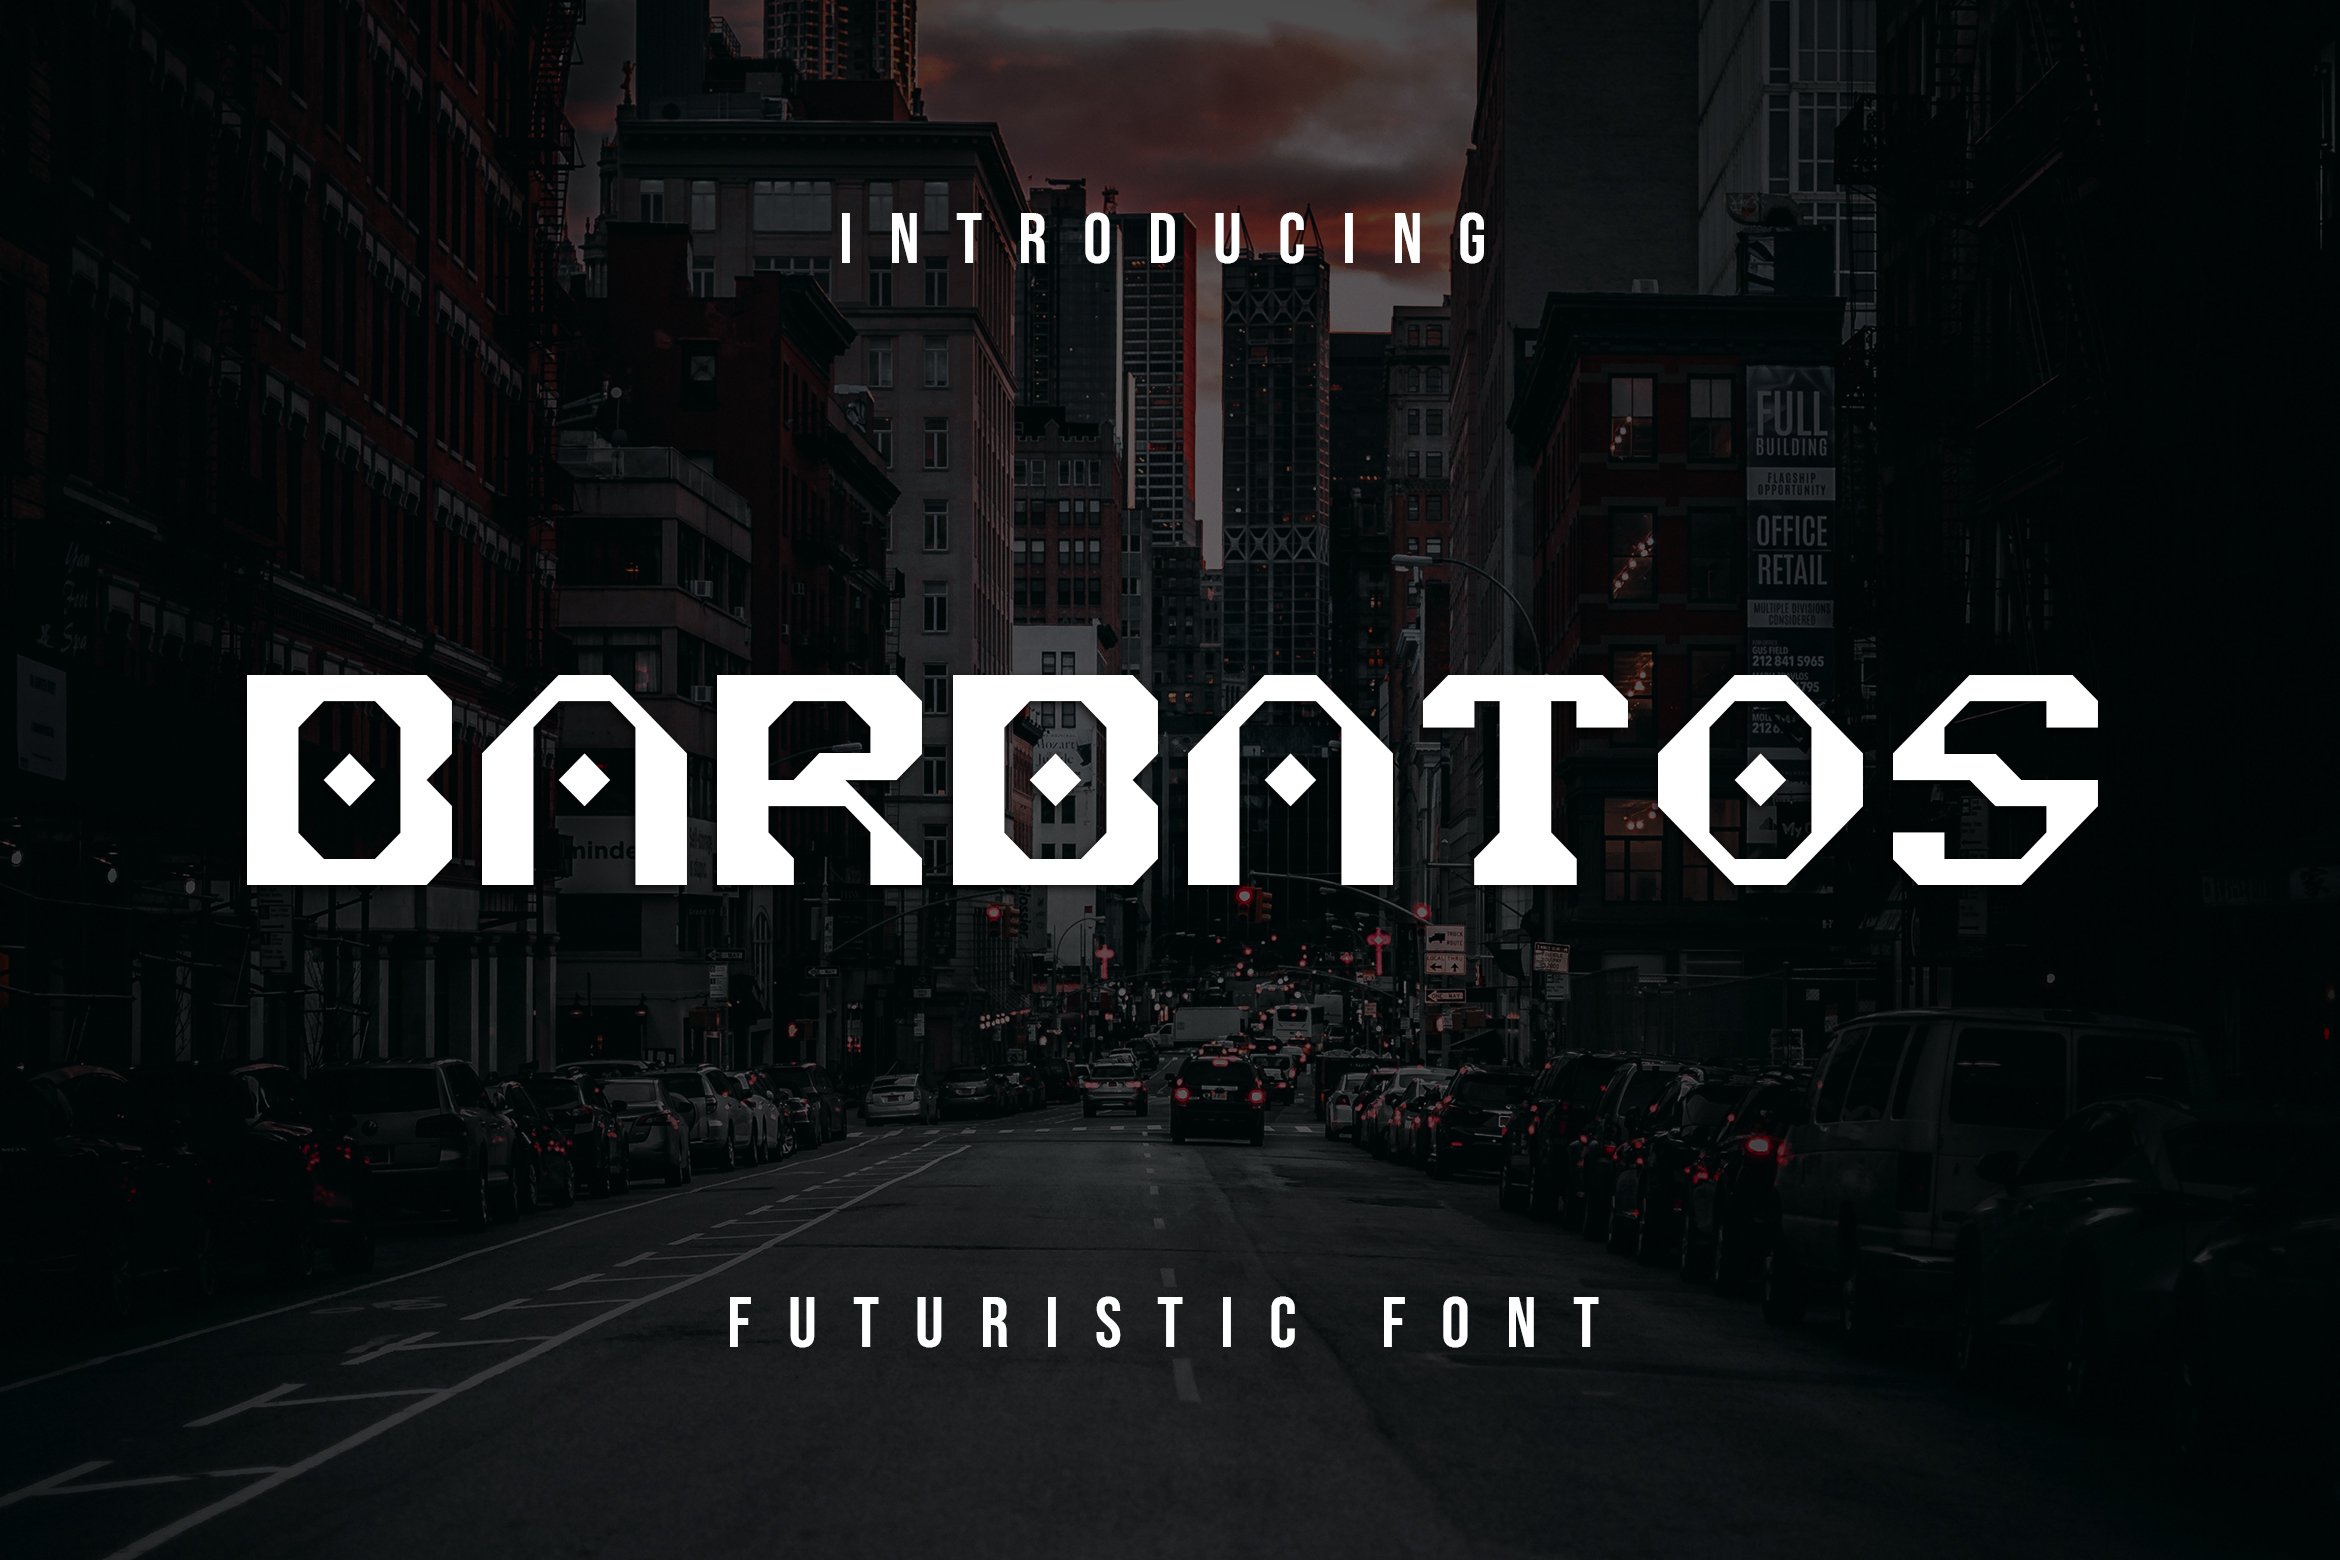 Barbatos Futuristic Font cover image.